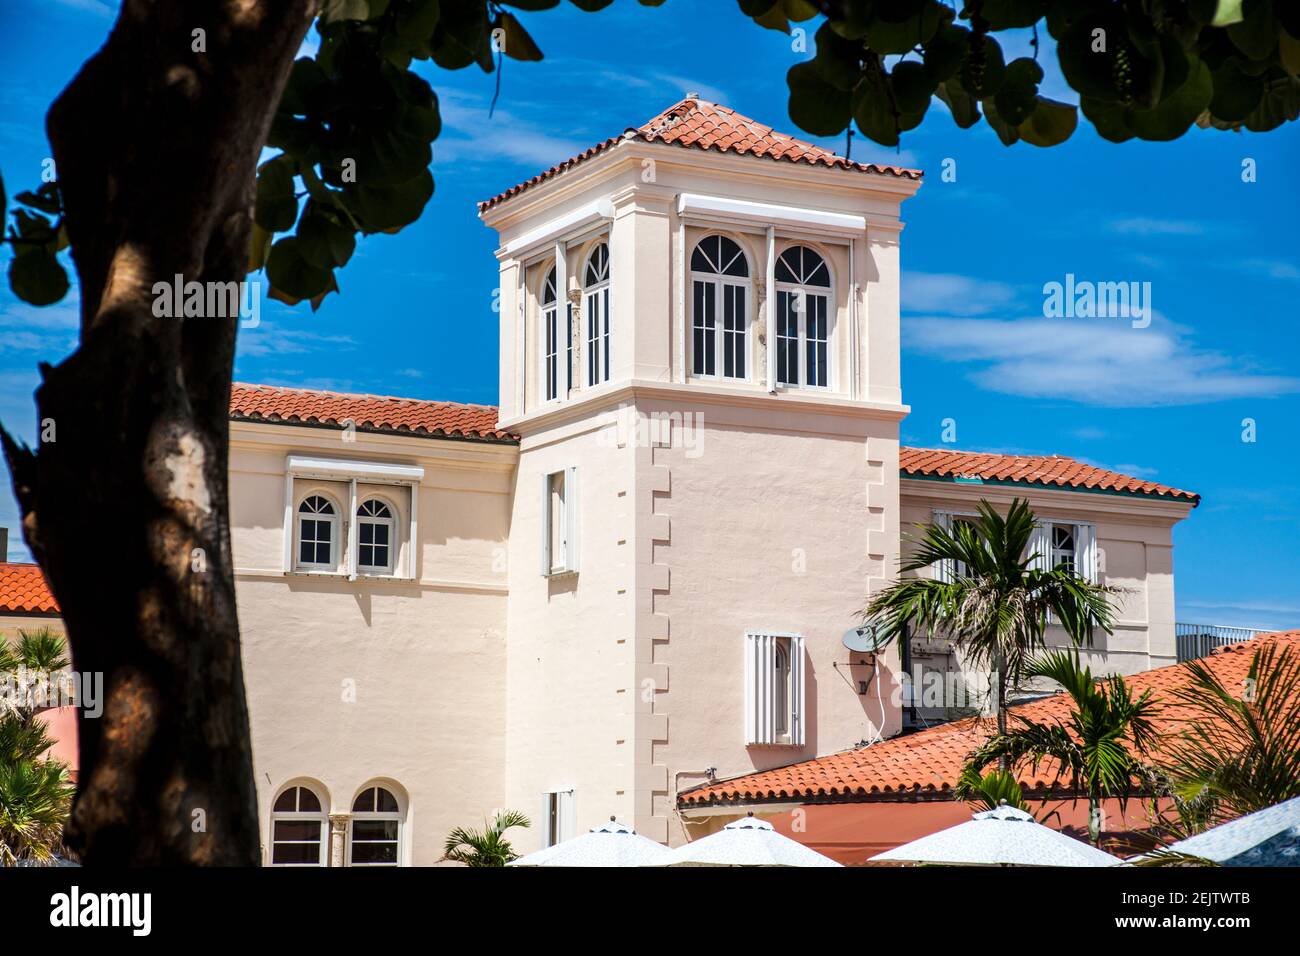 Le bâtiment principal de l'ancien Surf Club à Surfside, Miami Beach, Floride, fait maintenant partie de l'hôtel four Seasons. Banque D'Images